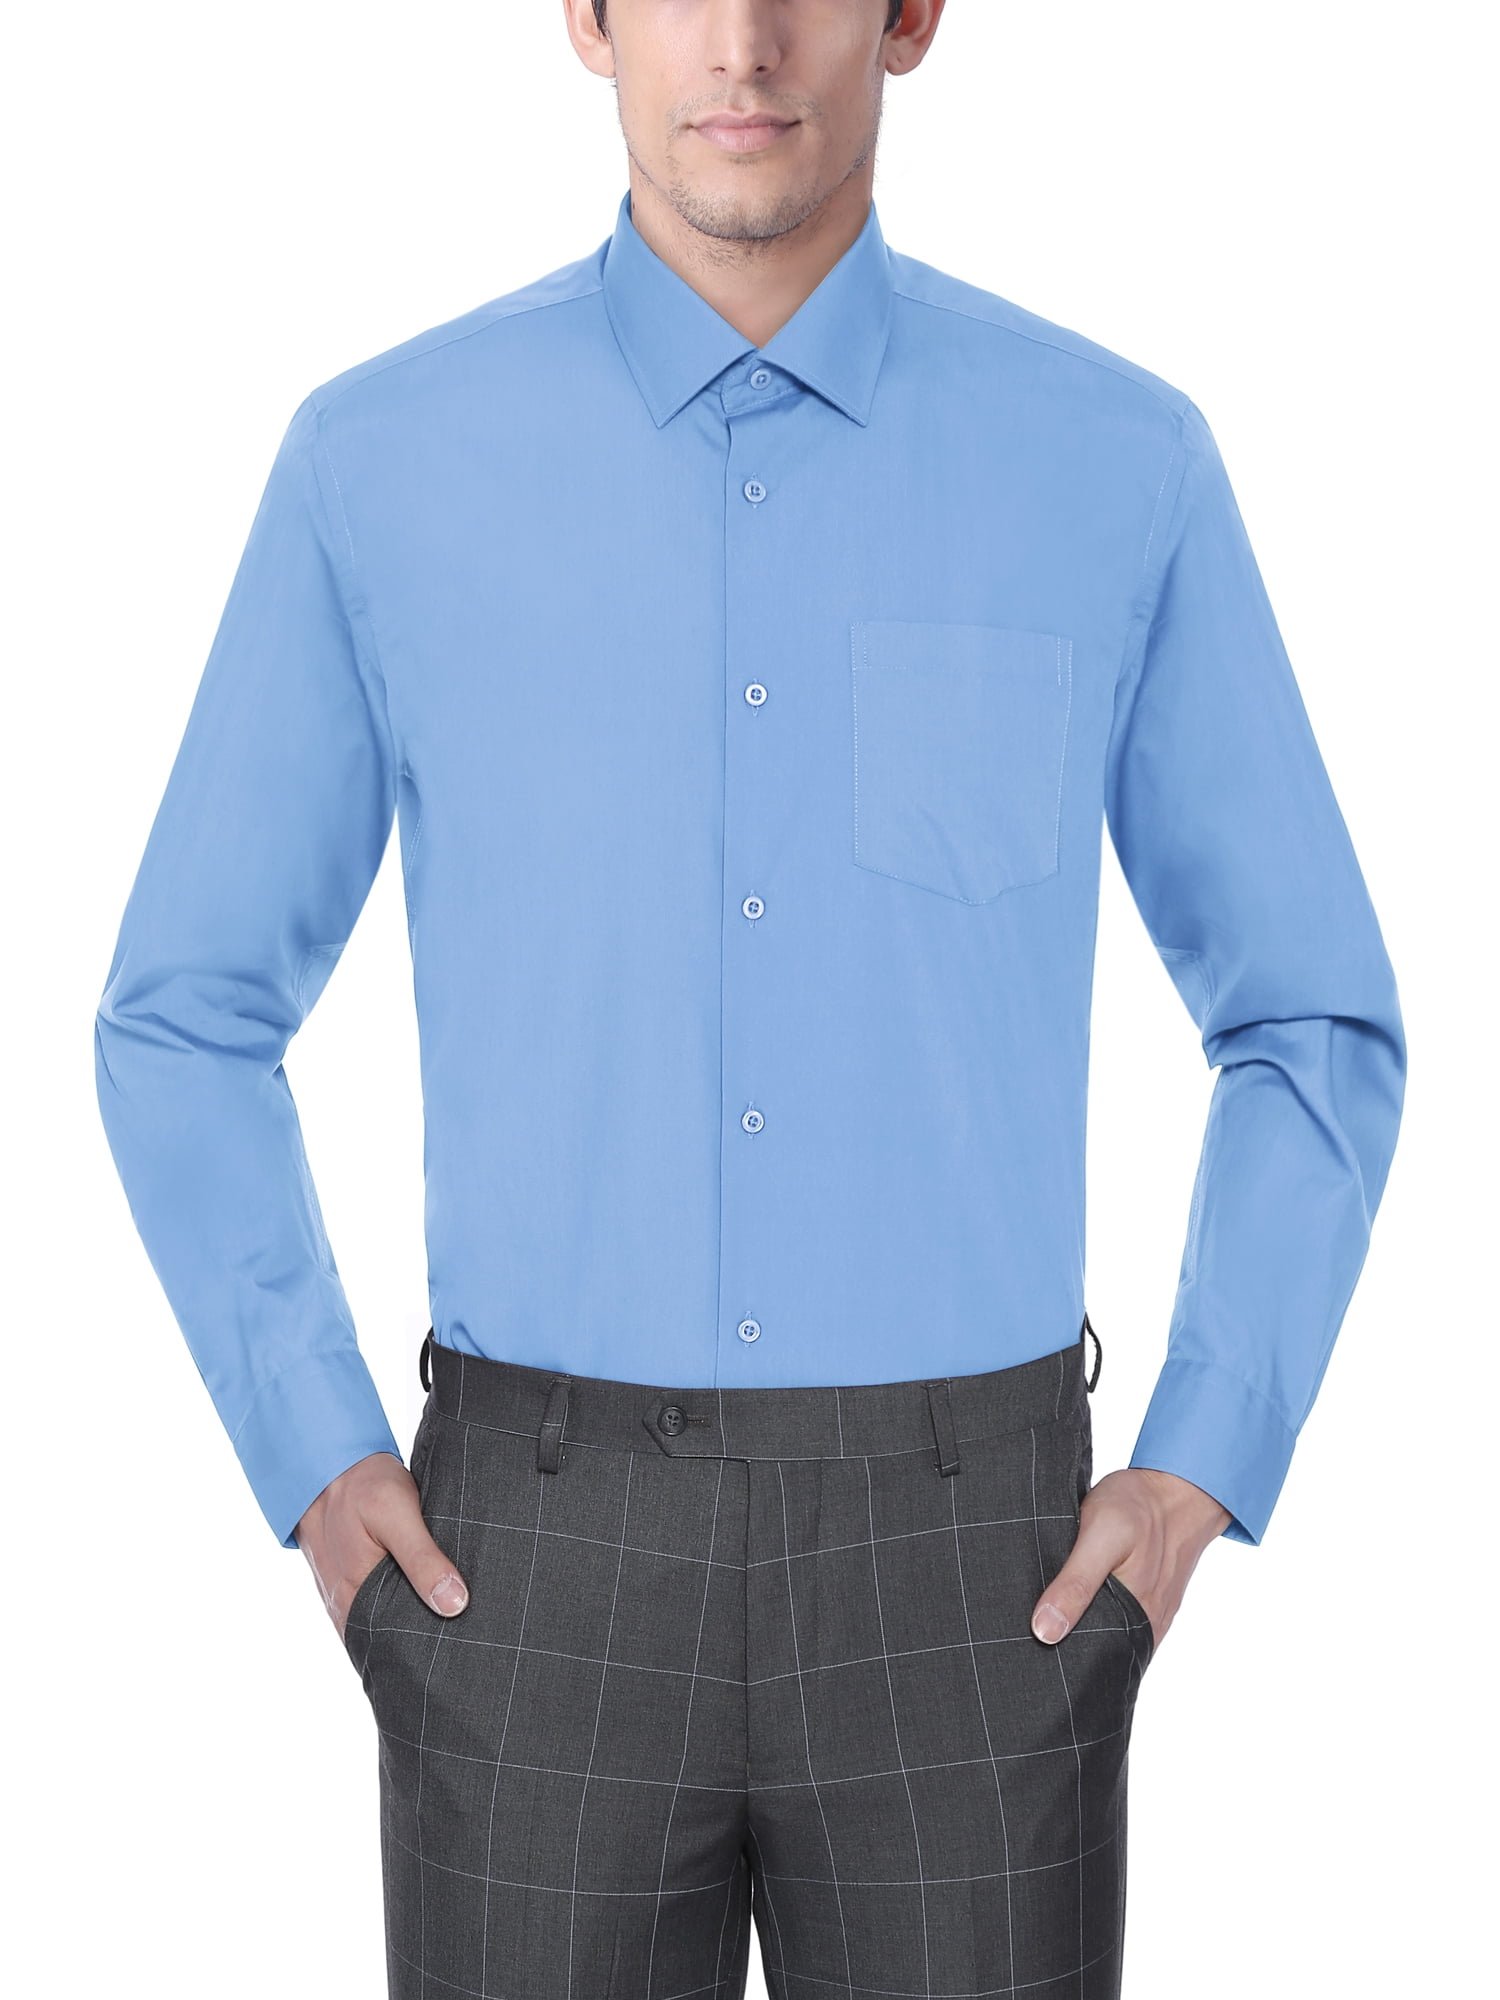 light blue long sleeve dress shirt